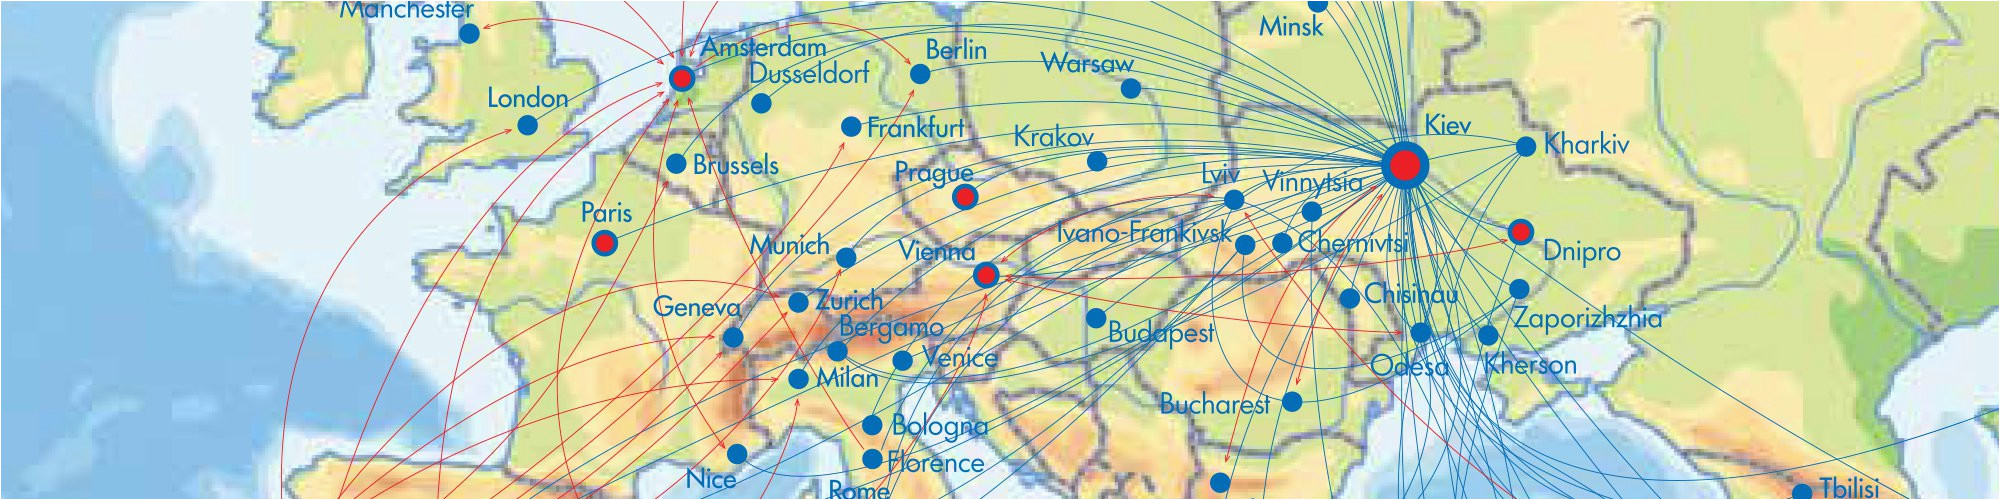 air routes map ukraine international airlines uia ukraine